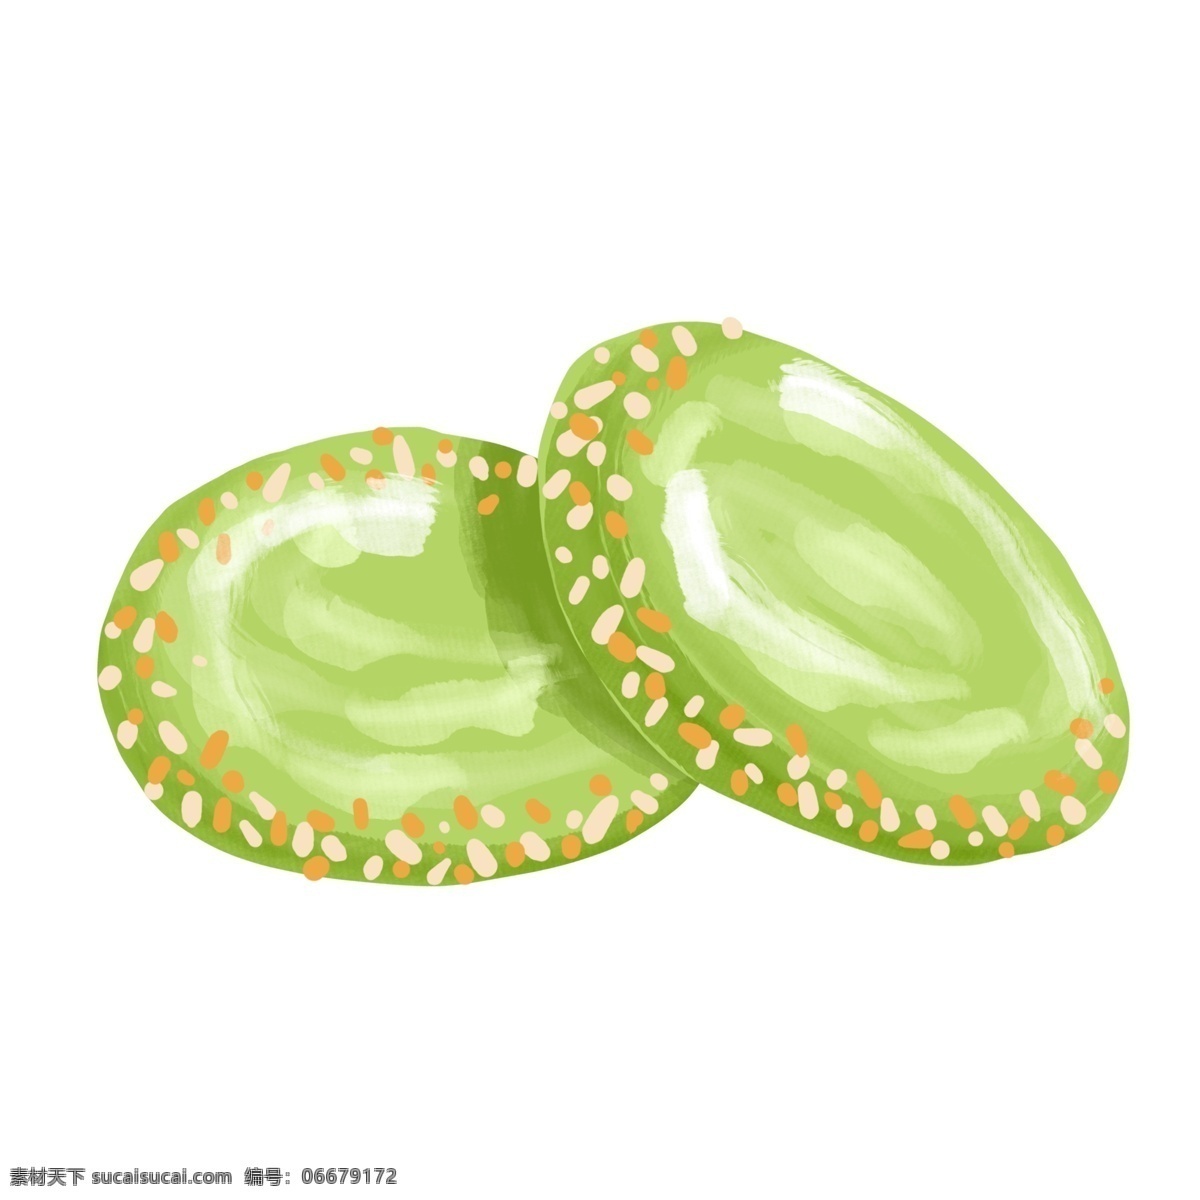 绿色 绿豆糕 插画 绿色的绿豆糕 营养绿豆糕 绿豆糕装饰 绿豆糕插画 立体绿豆糕 卡通绿豆糕